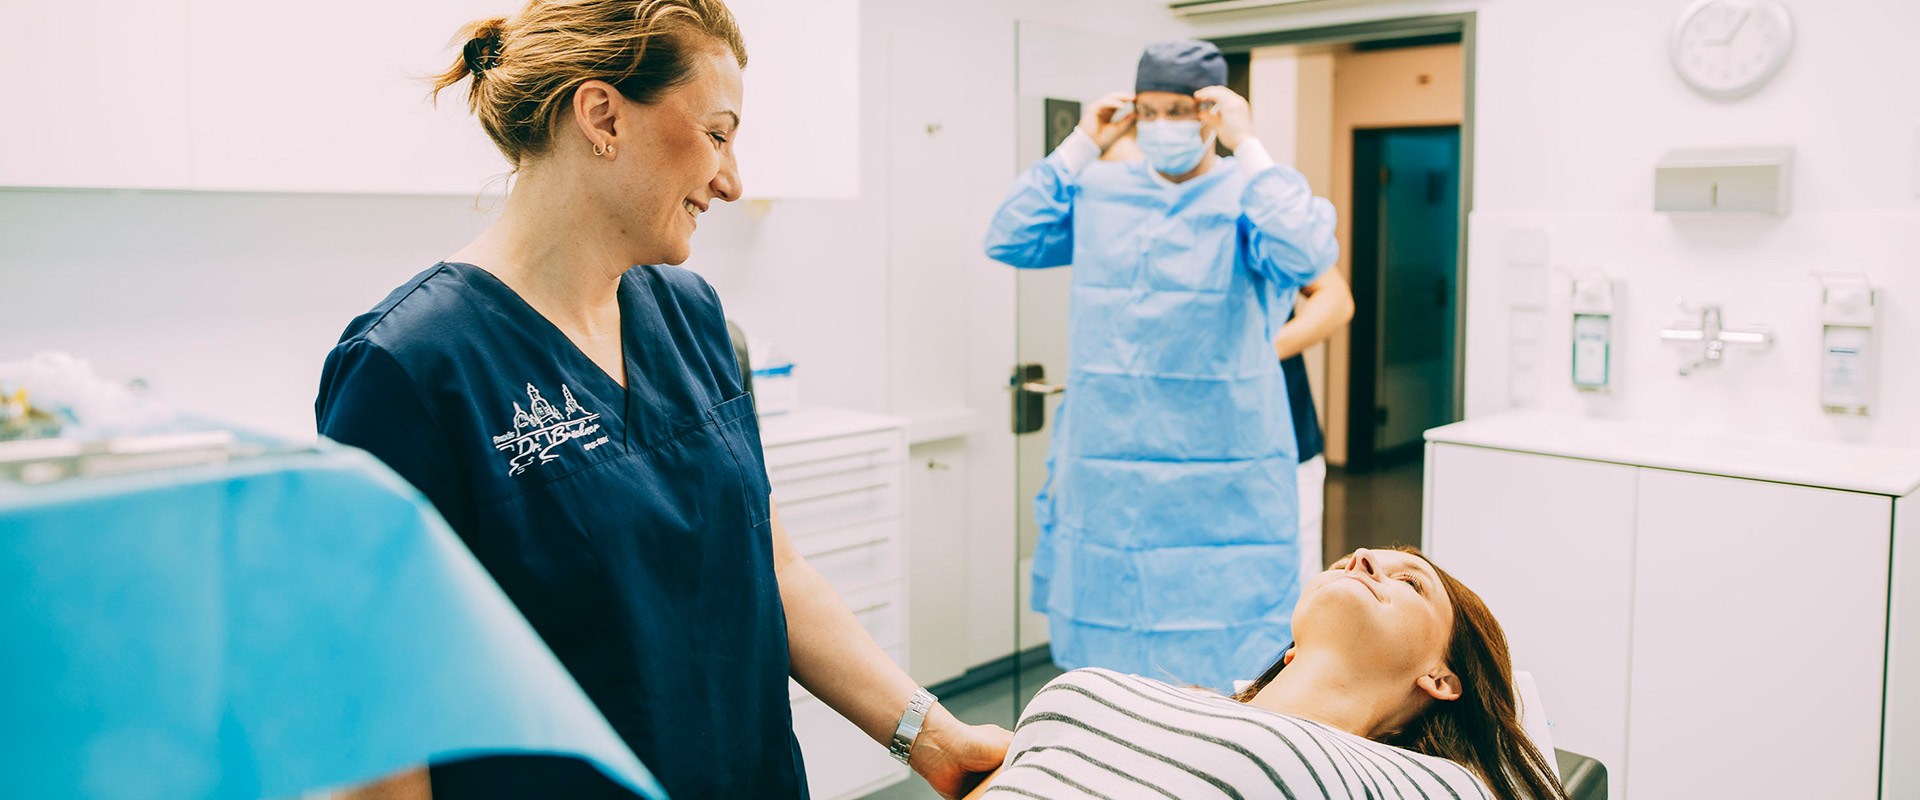 Das Bild zeigt eine ZFA, welche die Patientin auf die anstehende Narkose vorbereitet. Durch eine Narkose bei den Zahnärzten Brückner in Dresden bekommen ängstliche Patienten vom notwendigen Eingriff nichts mit.